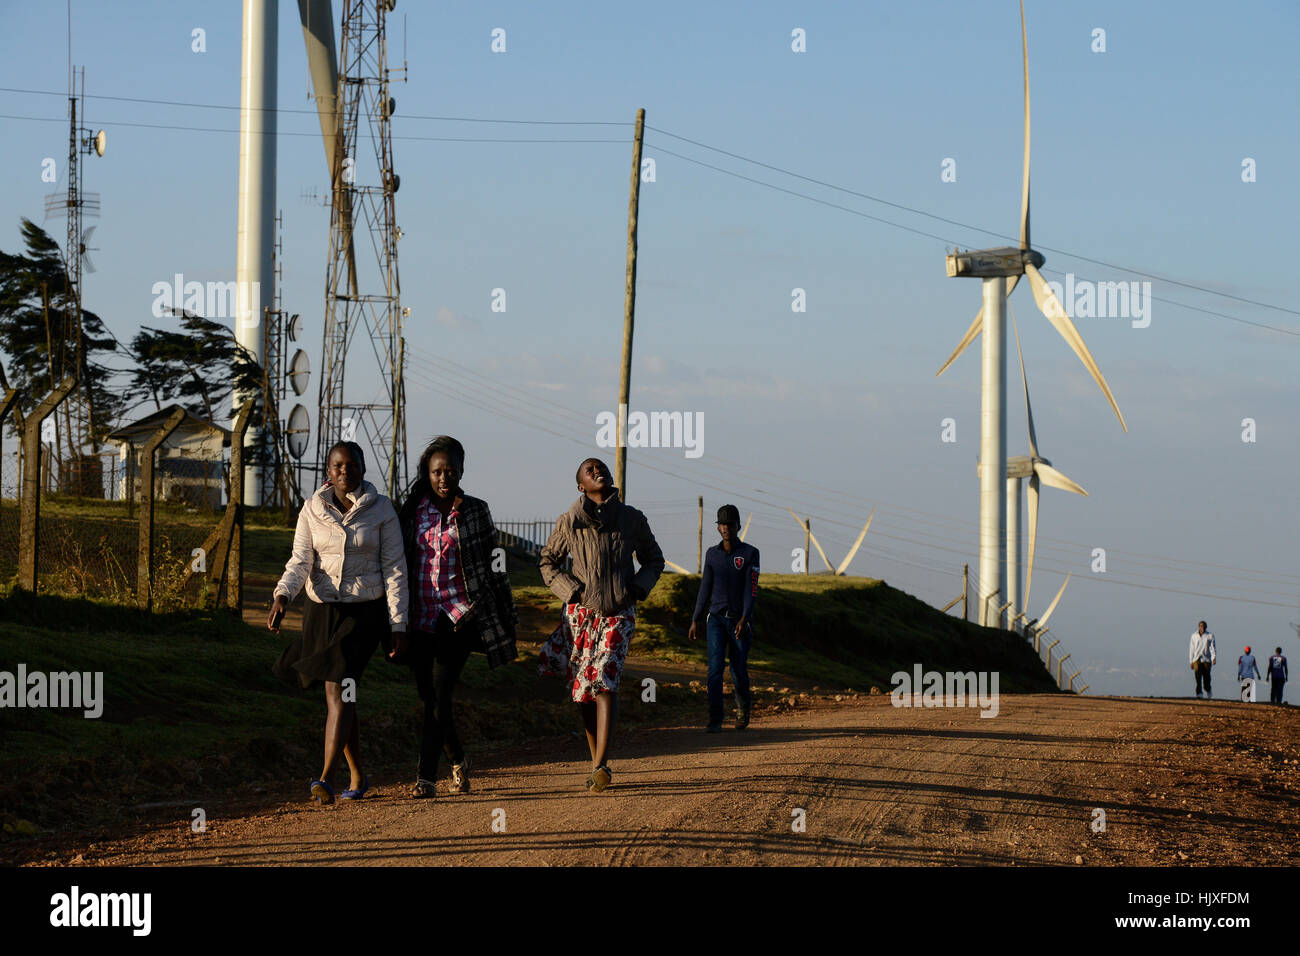 Kenia, Nairobi, Ngong Hills, 25,5 MW Wind Power Station mit Vestas und Gamesa Windturbinen im Besitz und wird betrieben von KENGEN Kenia Strom Generating Company / KENIA, Ngong Hills Windpark, Betreiber KenGen Kenia Strom Generating Company Mit Vestas Und Gamesa Windkraftanlagen Stockfoto